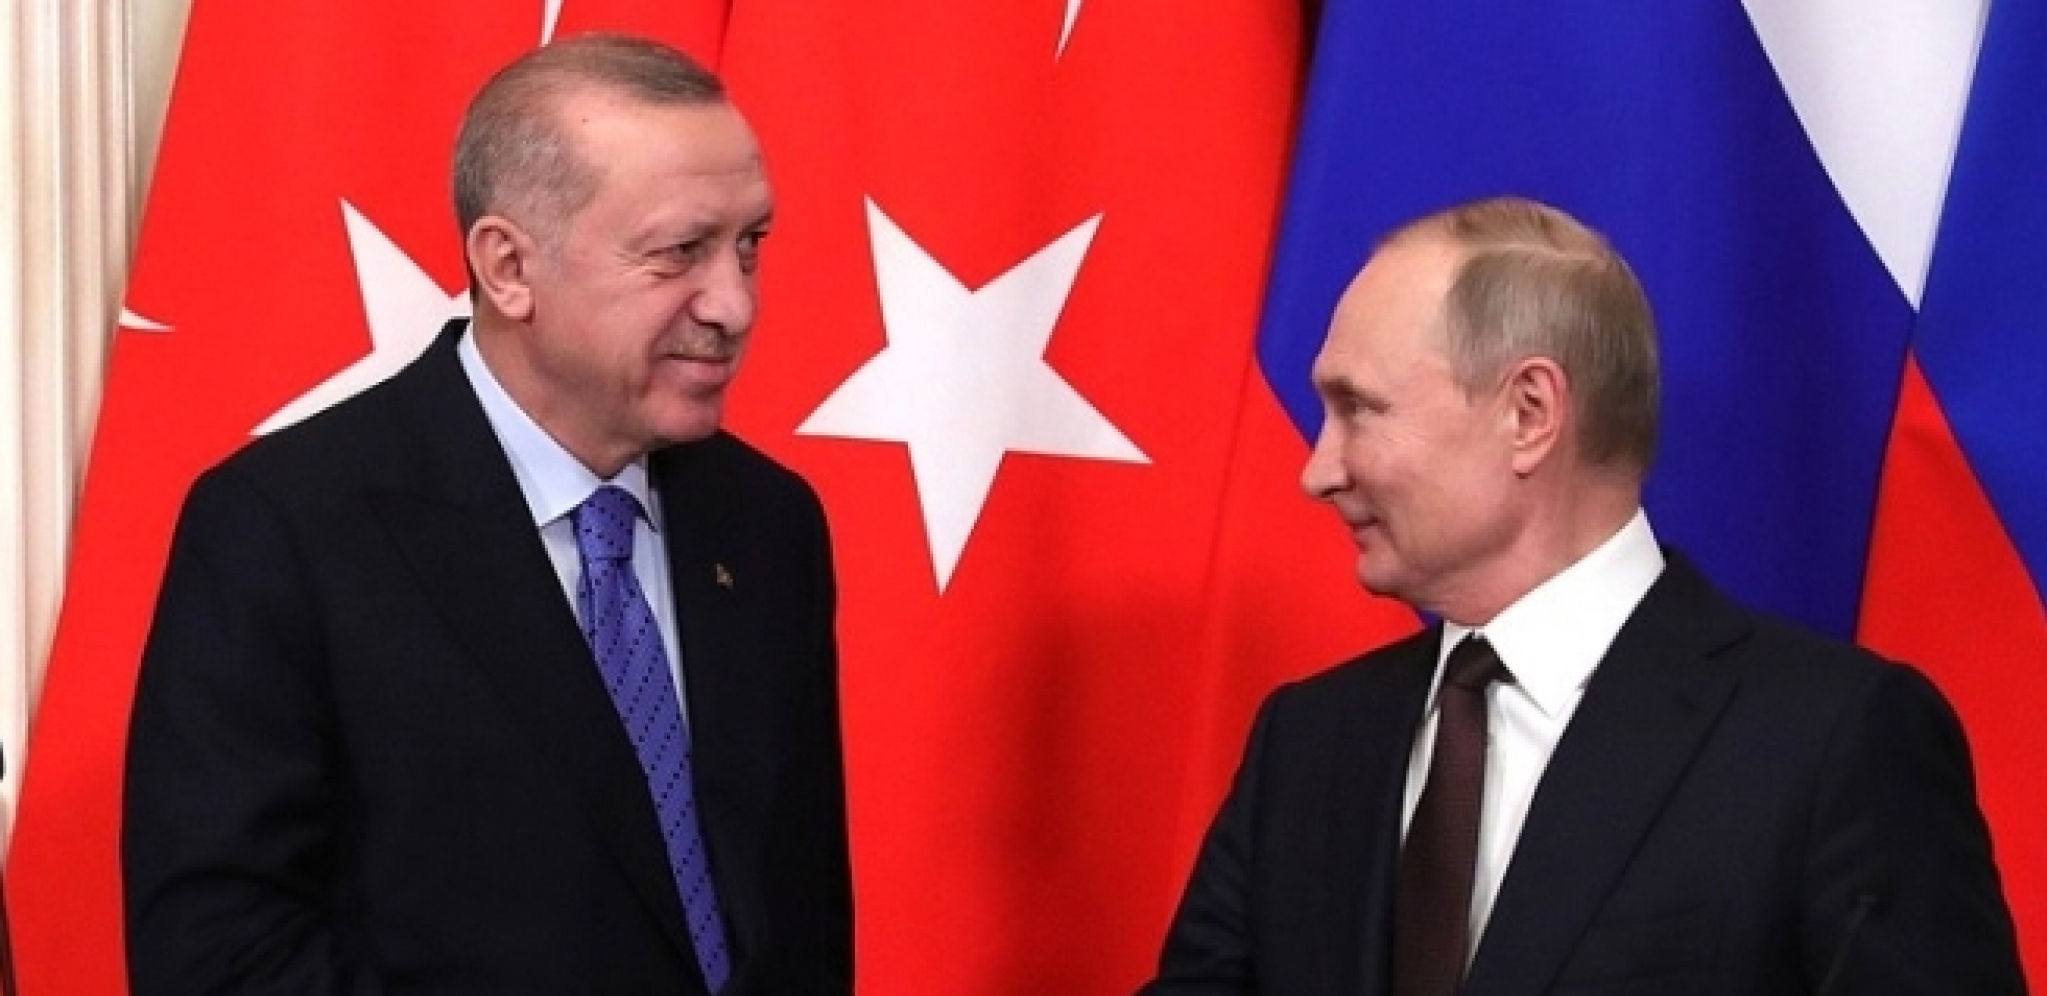 "EVROPA NEK SE ZAHVALI TURSKOJ" Putin poručio nakon sastanka s Erdoganom, nova stranica u odnosima dve zemlje